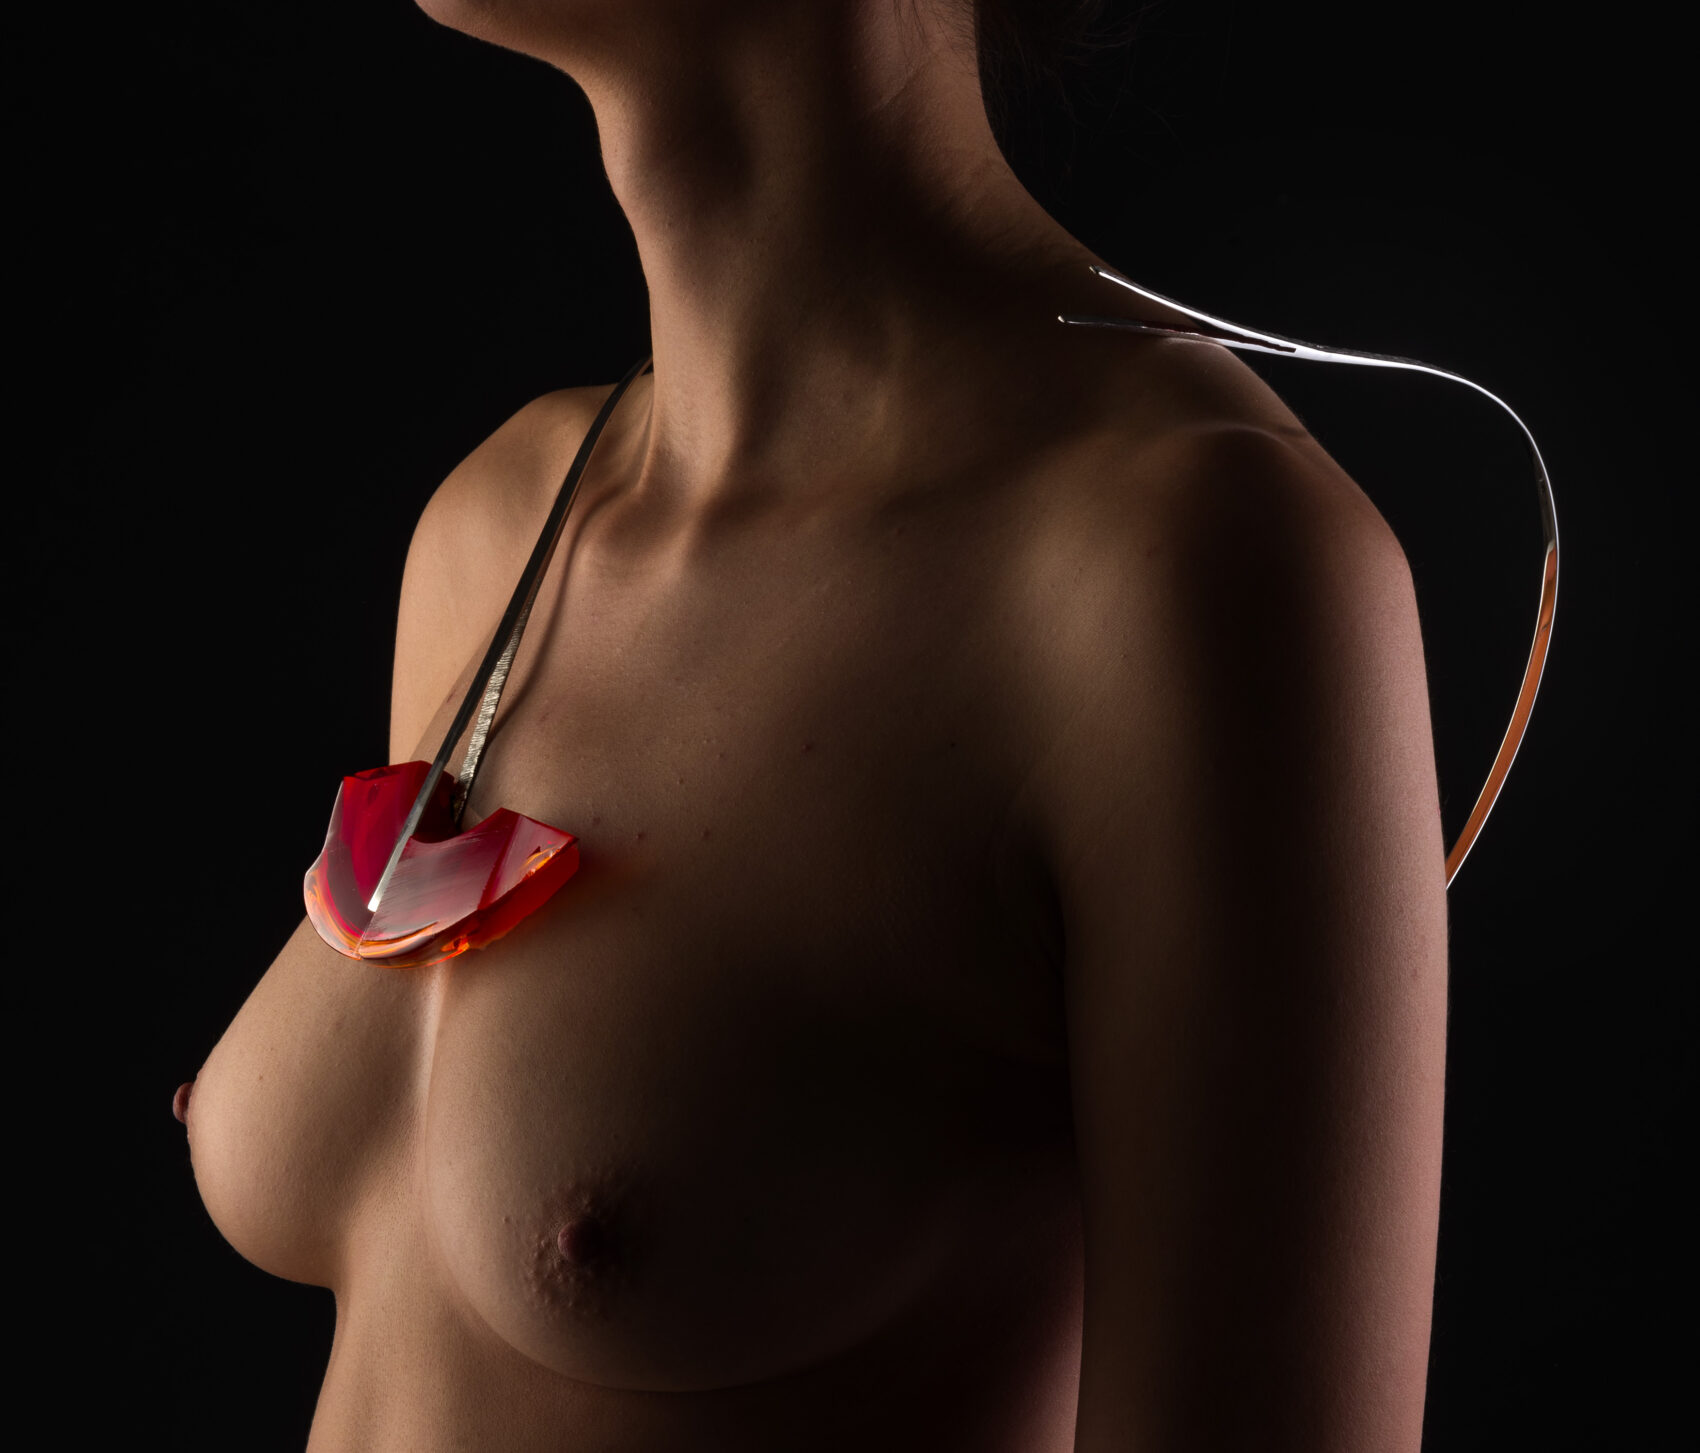 Červený skleněný náhrdelník na nahé ženské hrudi